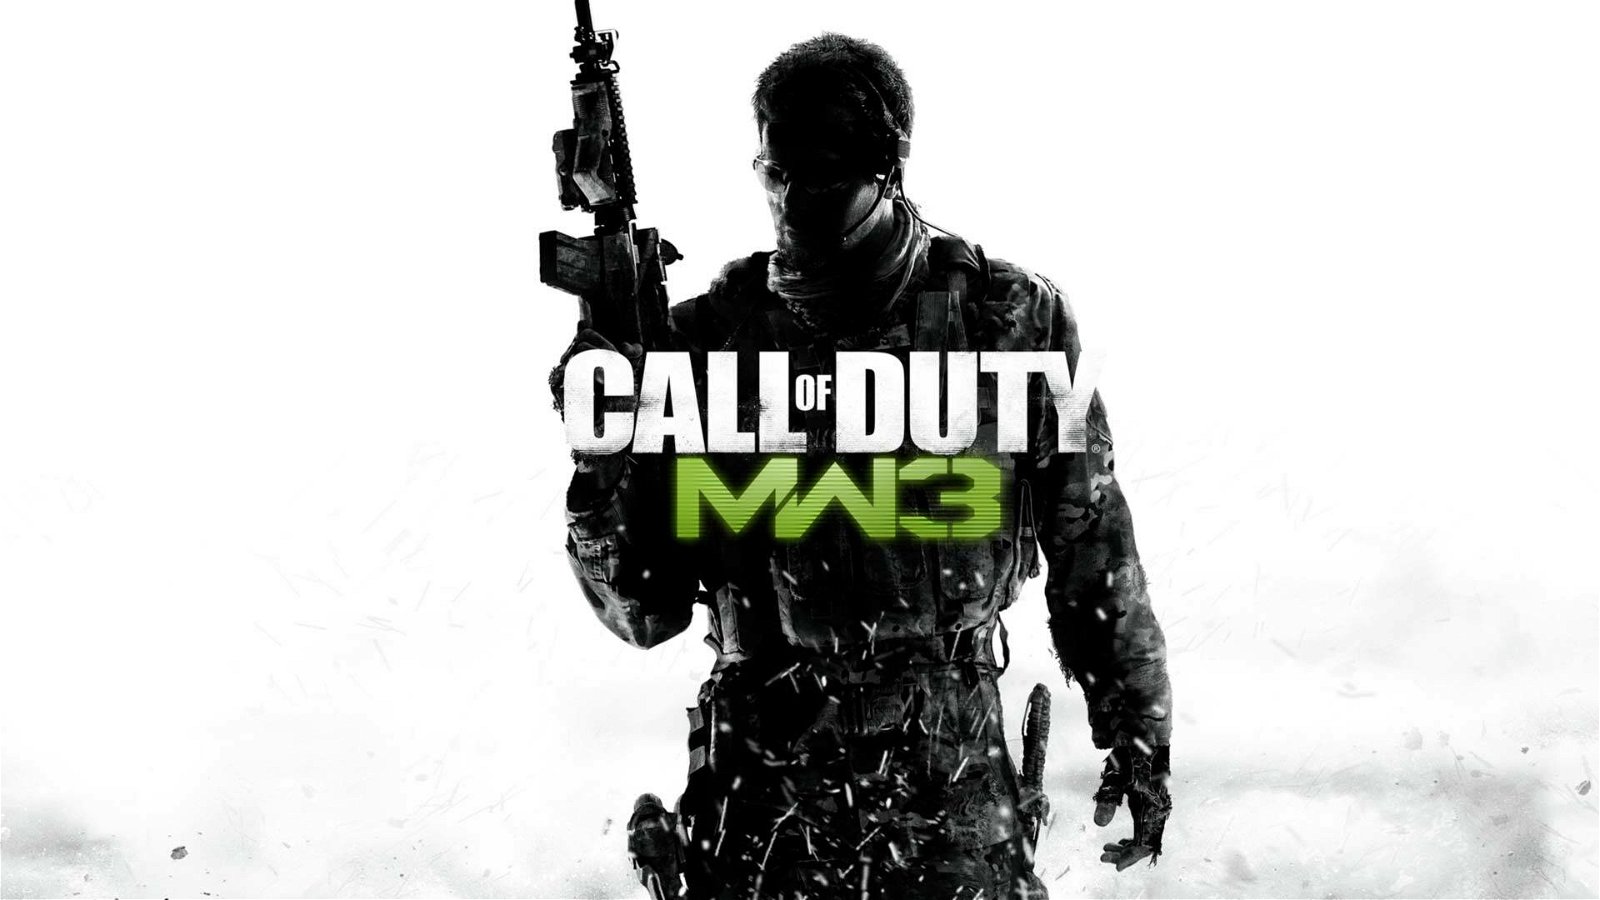 Immagine di Call of Duty Modern Warfare 3 remastered, annuncio in arrivo?